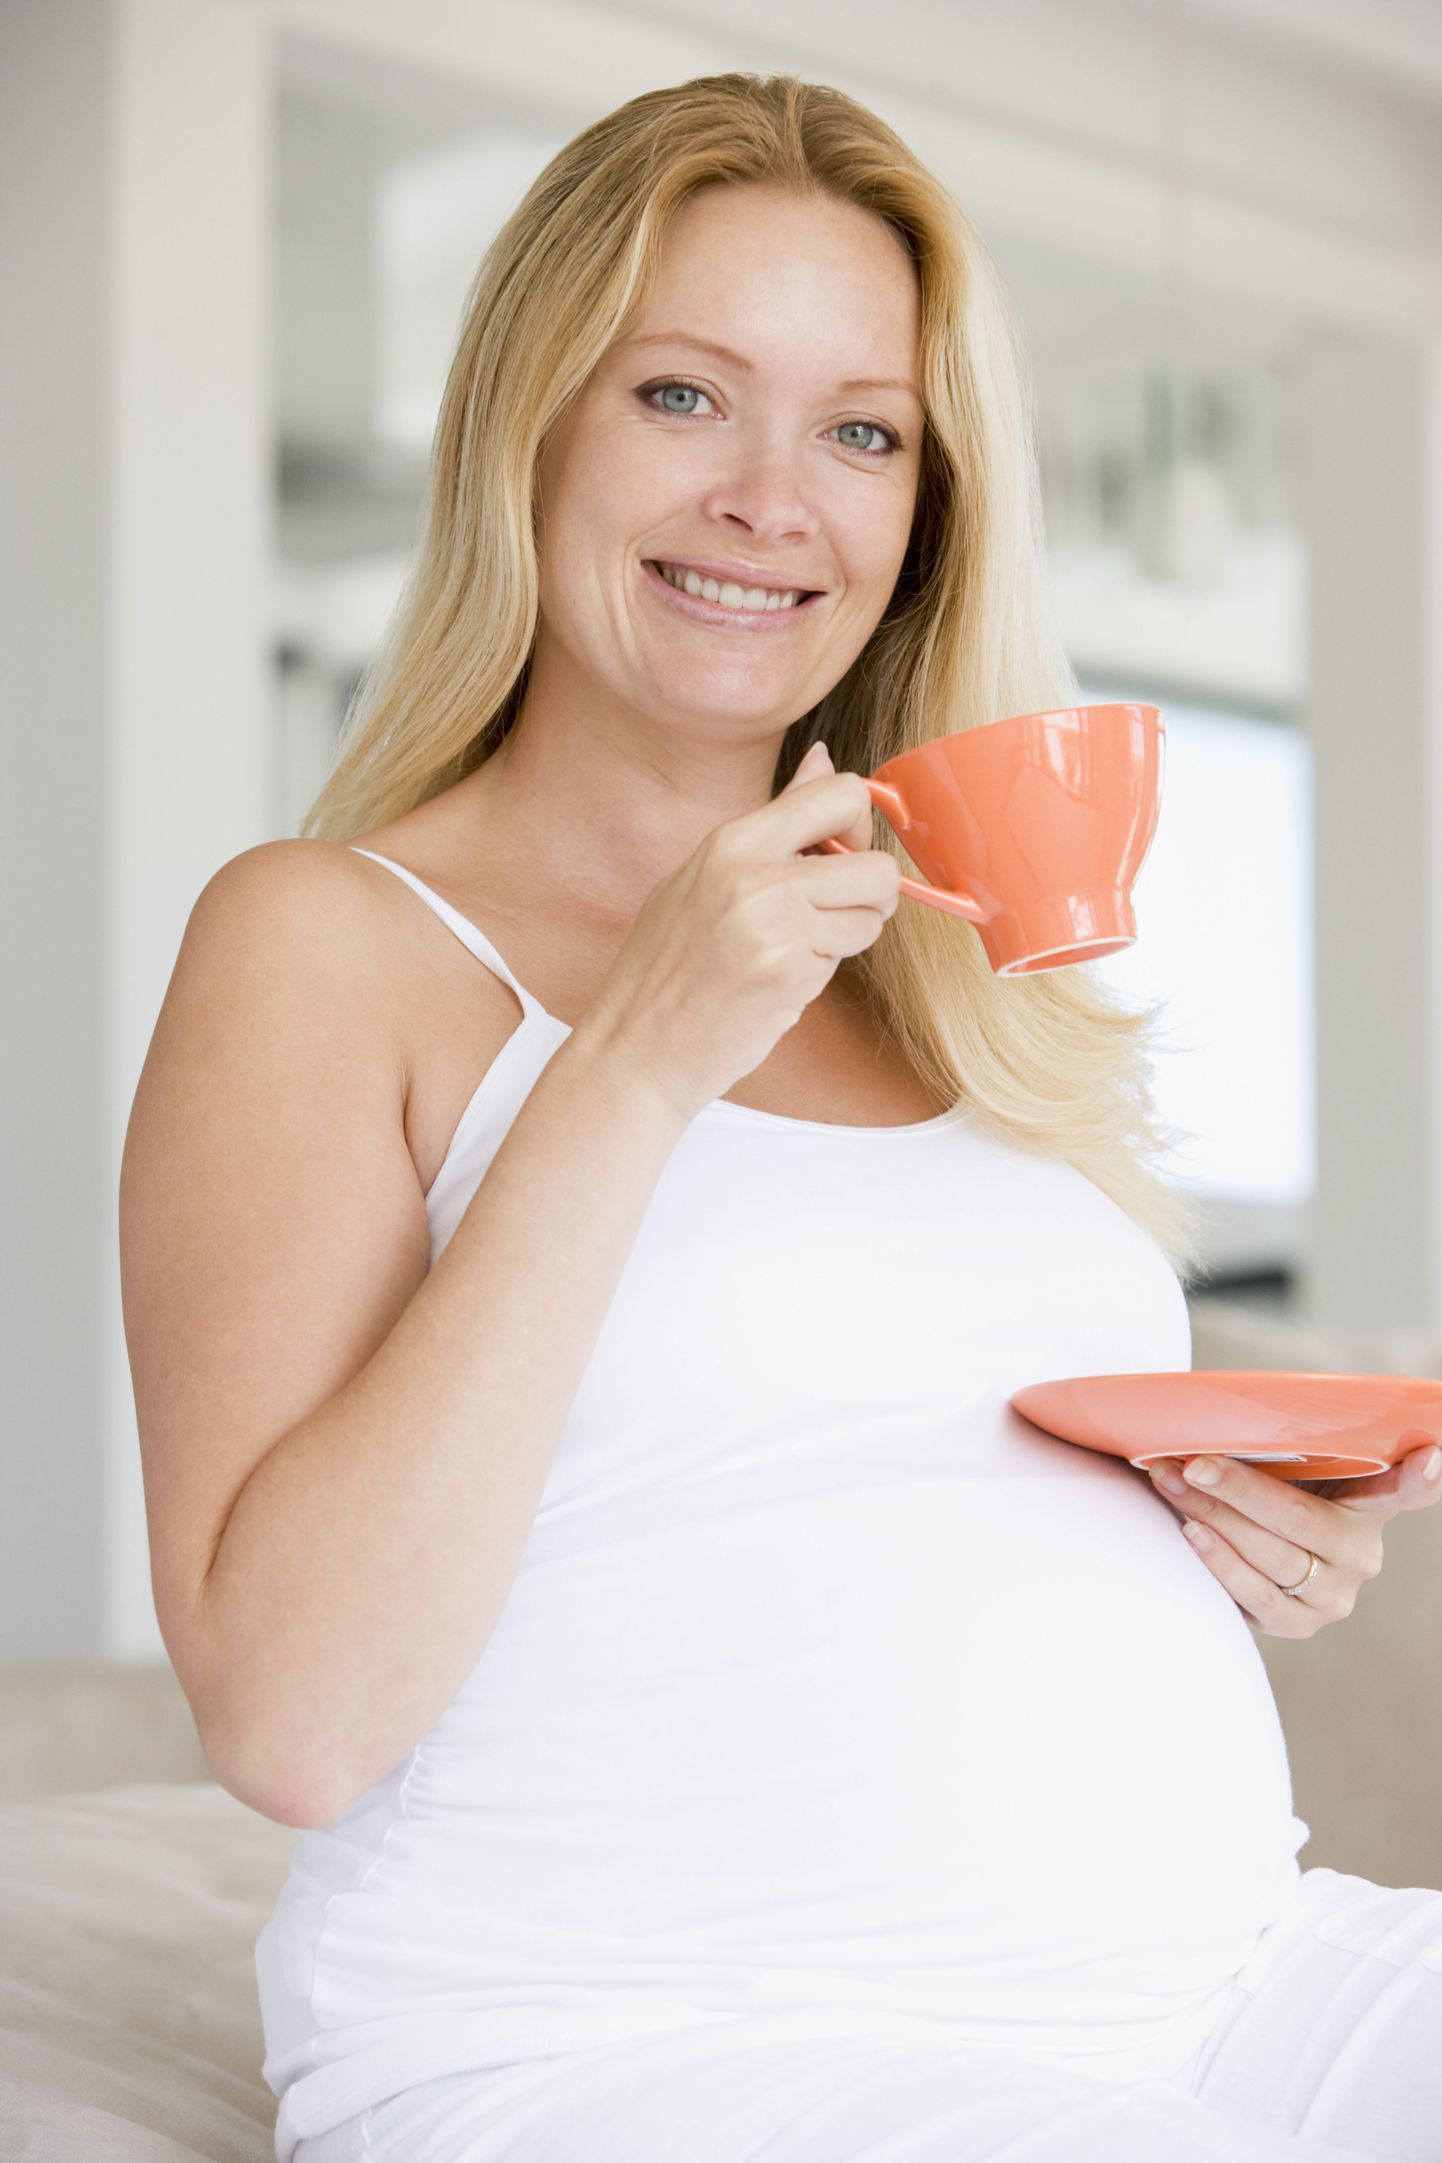 Tass kohvi päevas on rasedale täiesti ohutu, kinnitavad Ameerika naistearstid.